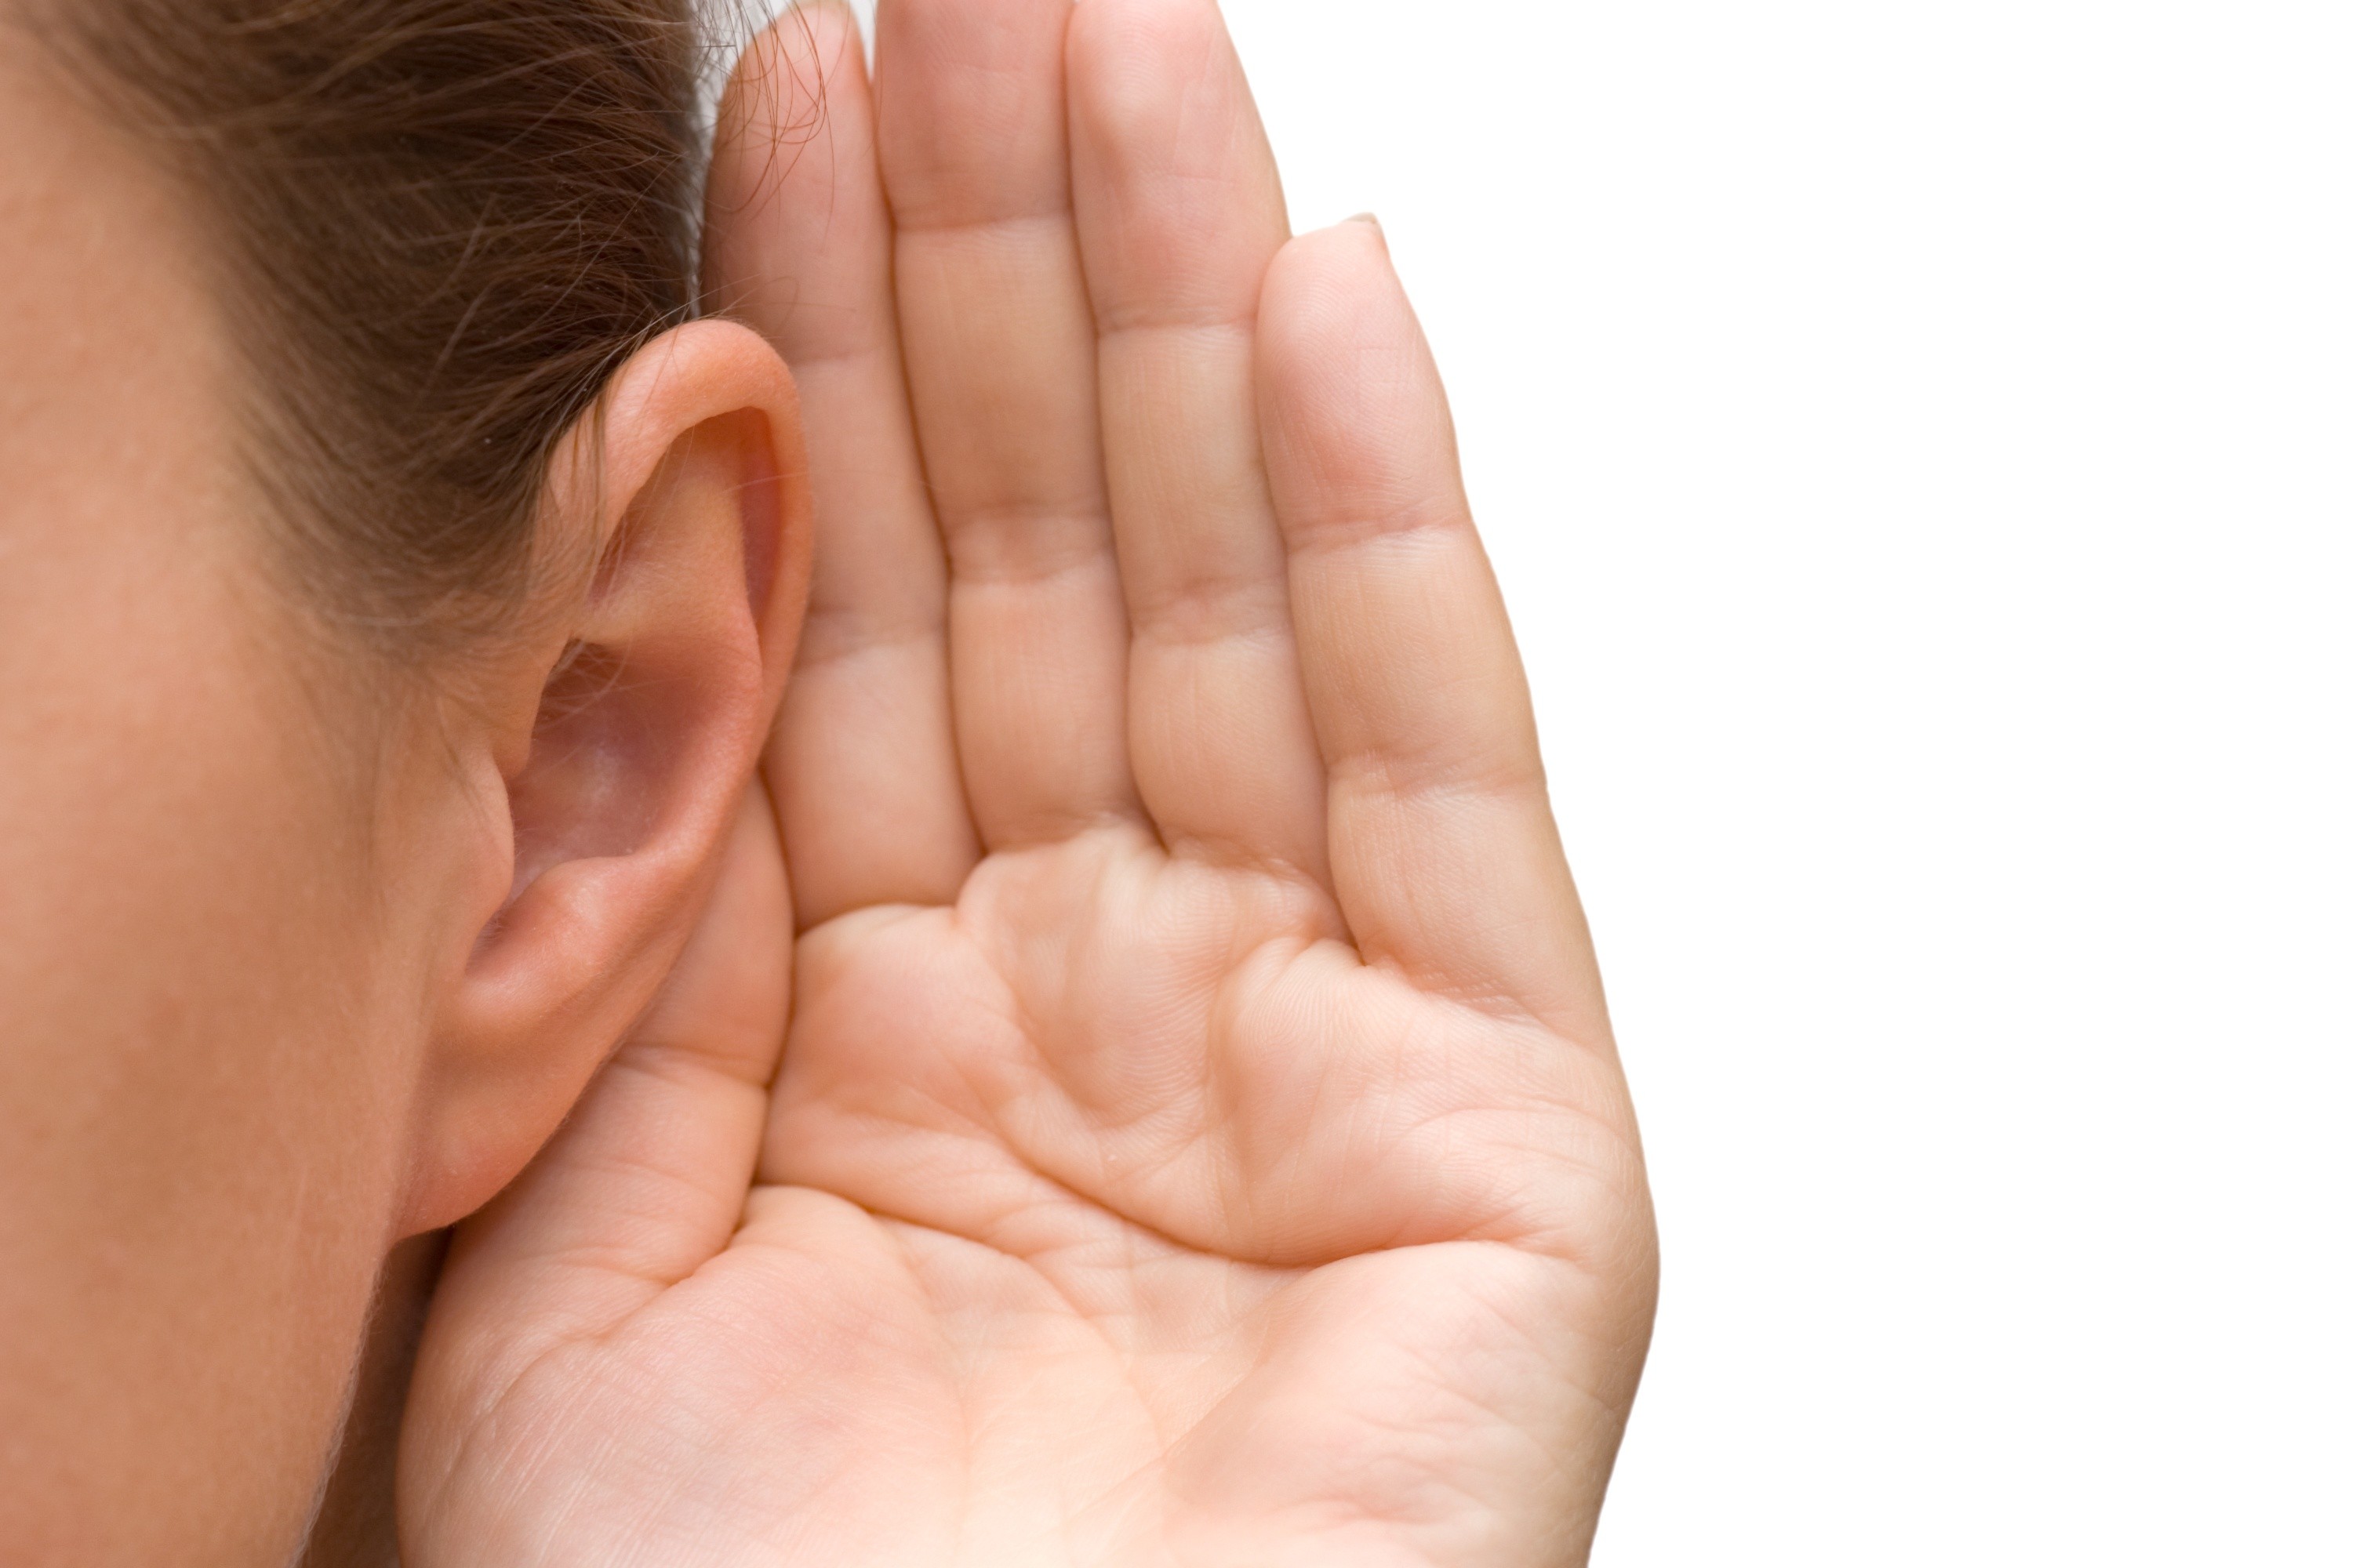 В YouTube появилось видео позволяющее осуществлять проверку слуха, а также возраста